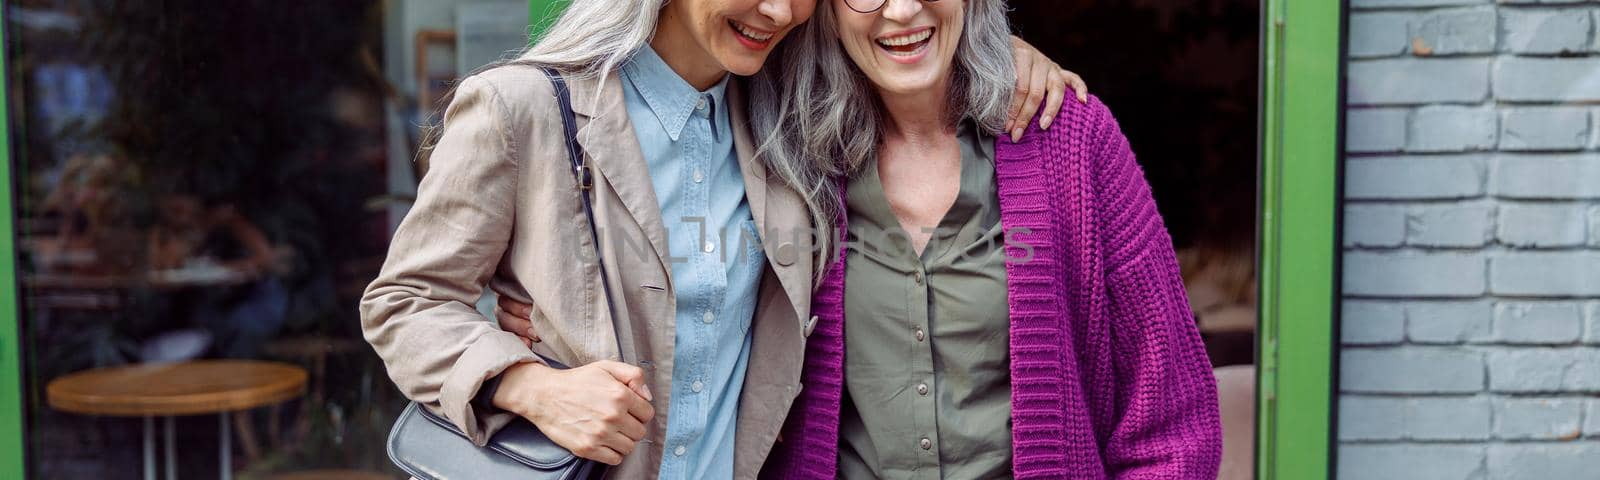 Pretty senior Asian lady hugs friend in purple jacket standing near cafe on street by Yaroslav_astakhov